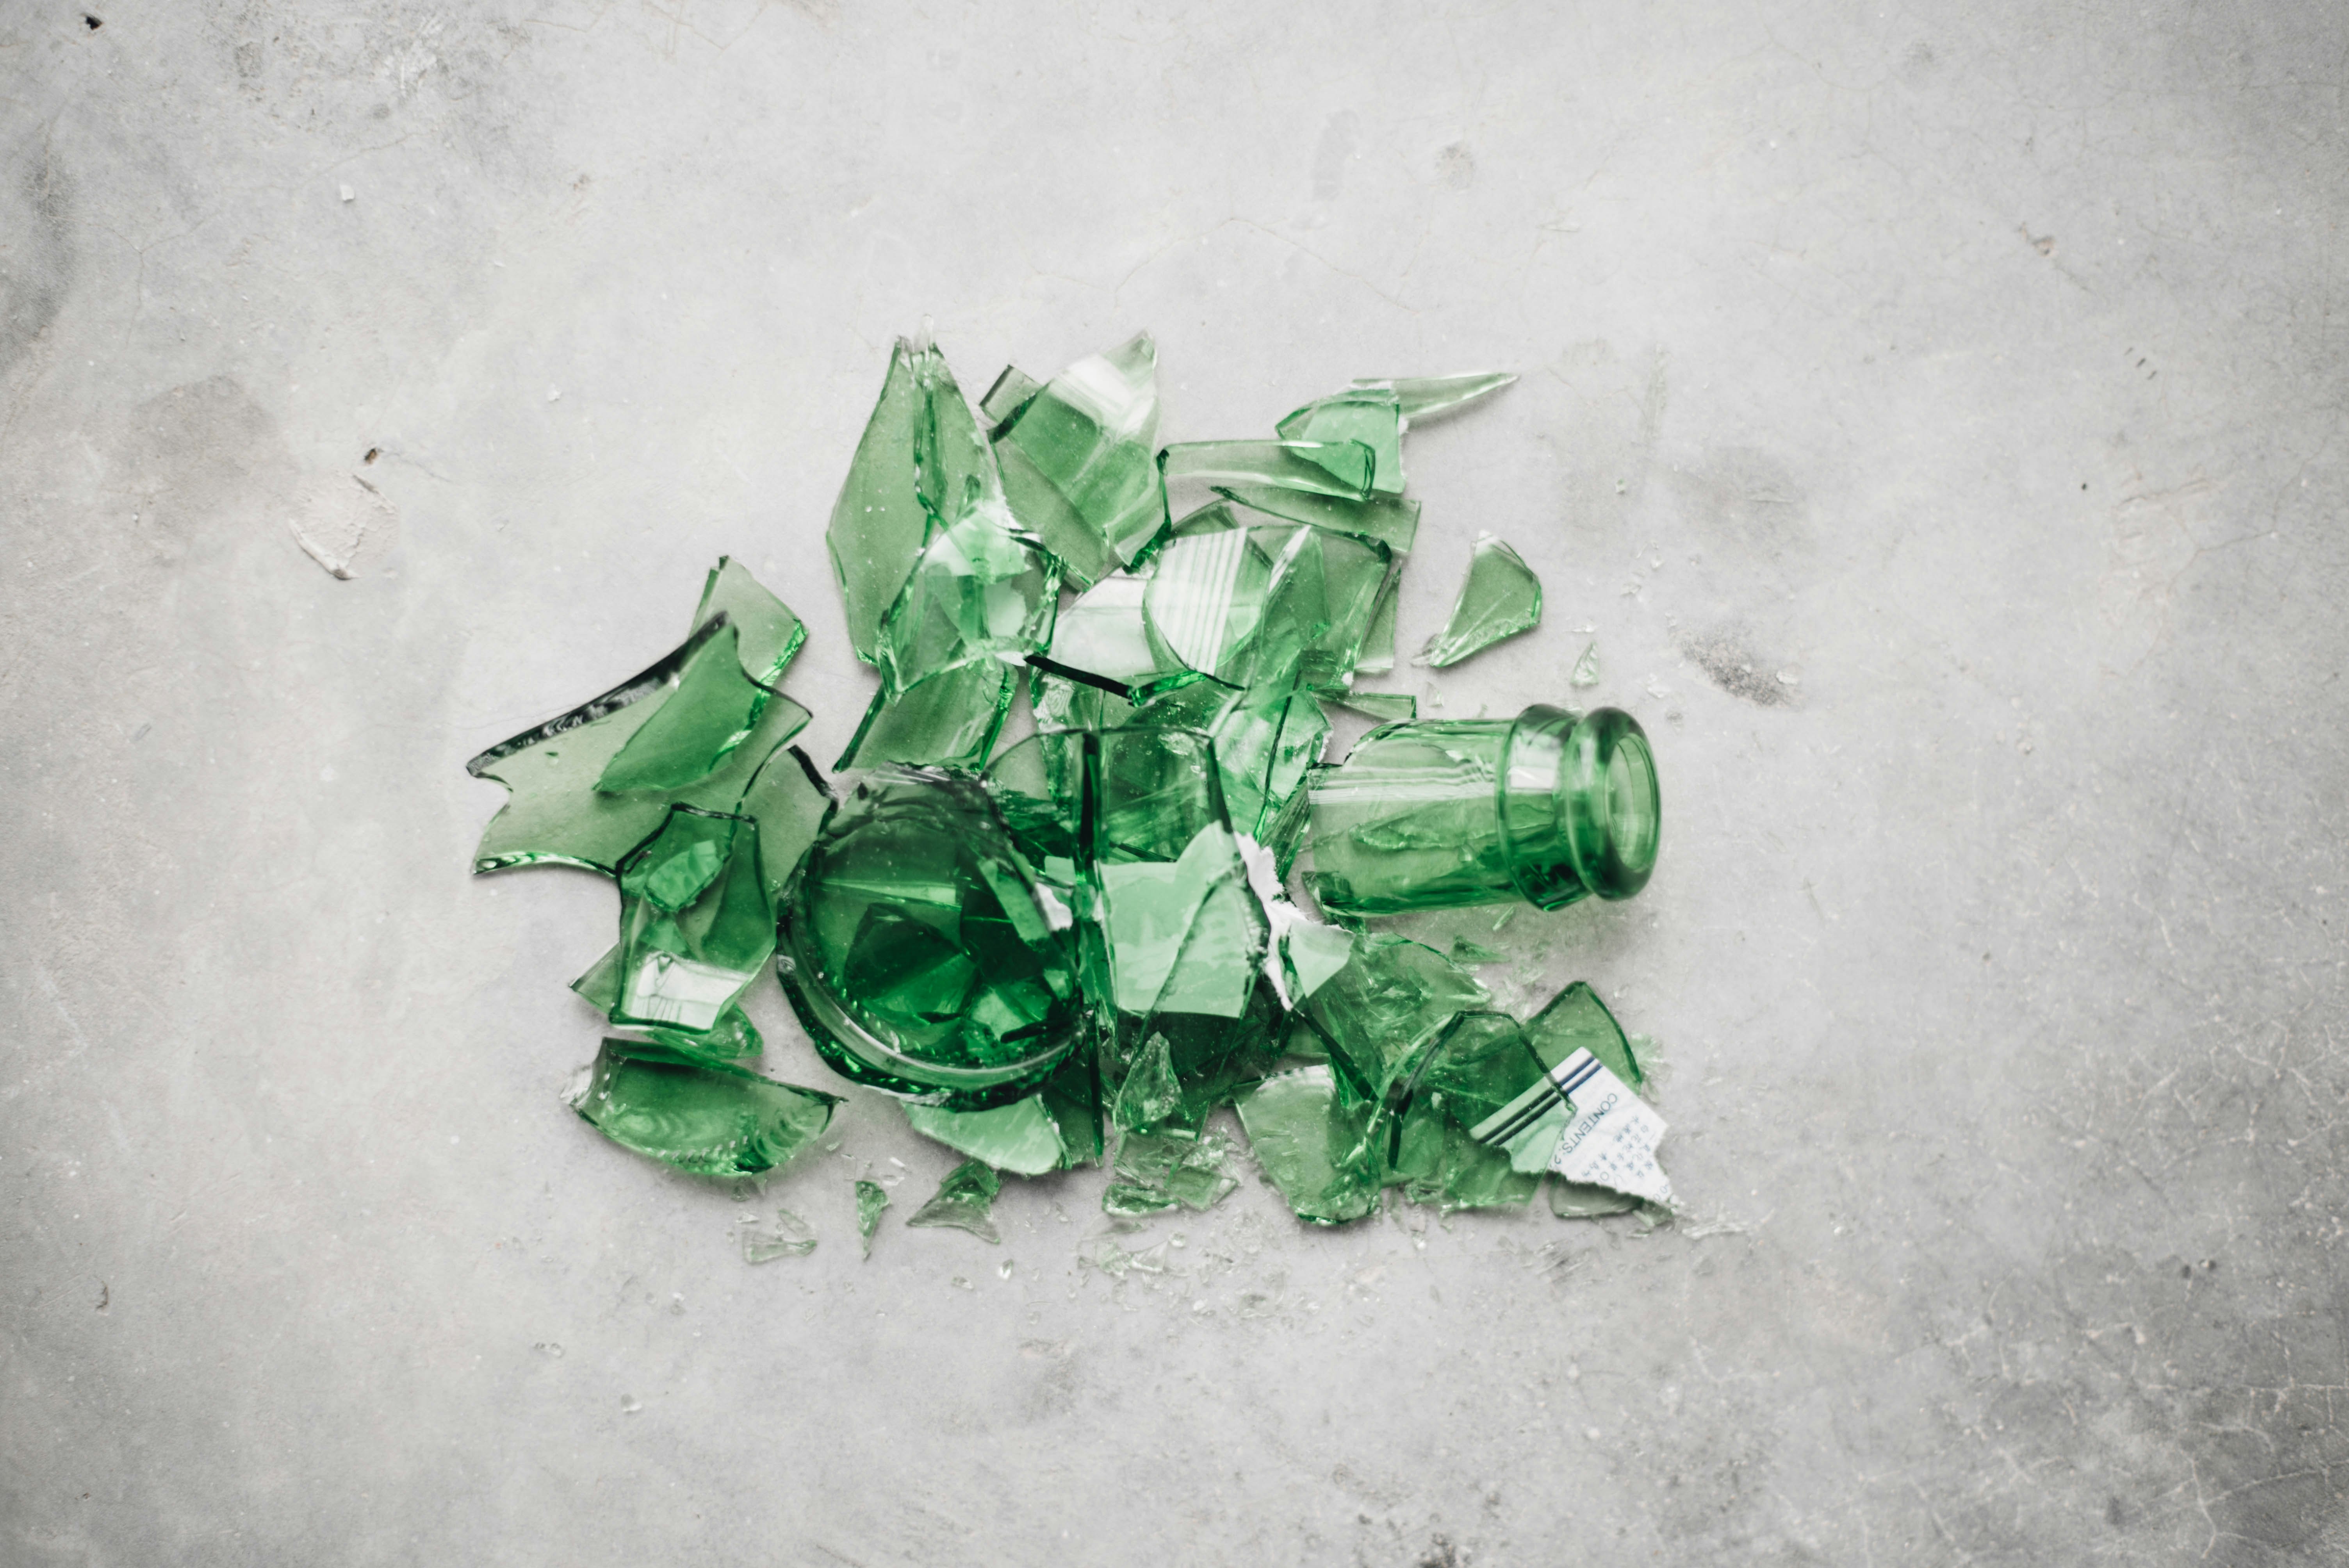 broken green glass bottle on the ground